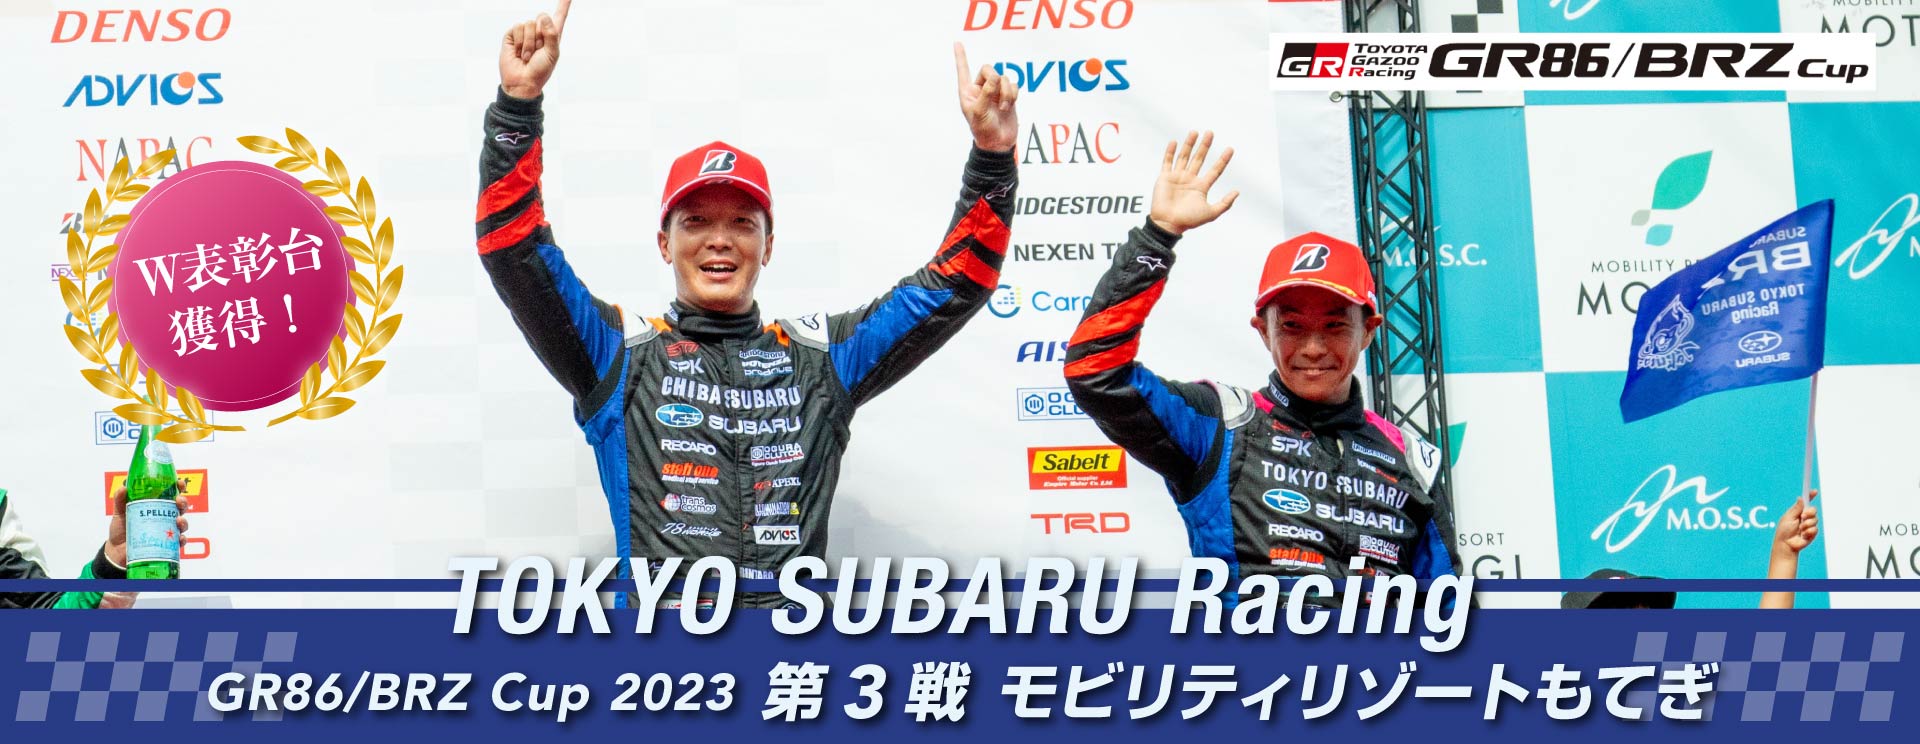 東京スバル TOKYO SUBARU Racing GR86/BRZ Cup2023 第3戦 モビリティリゾートもてぎ